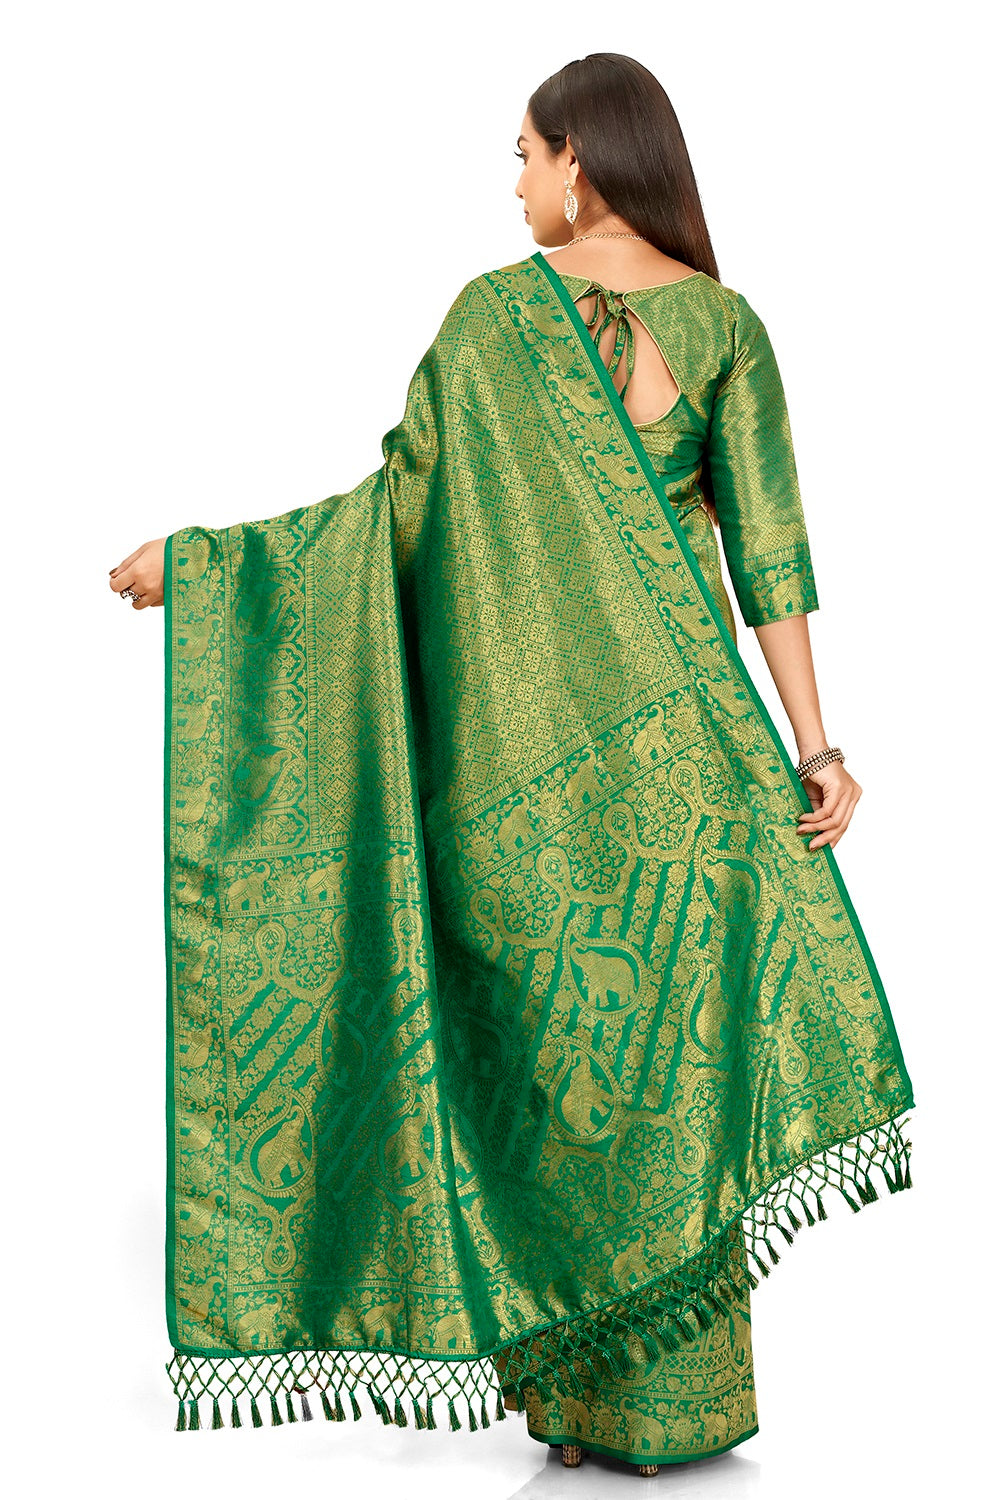 Green color banarasi silk saree buy now